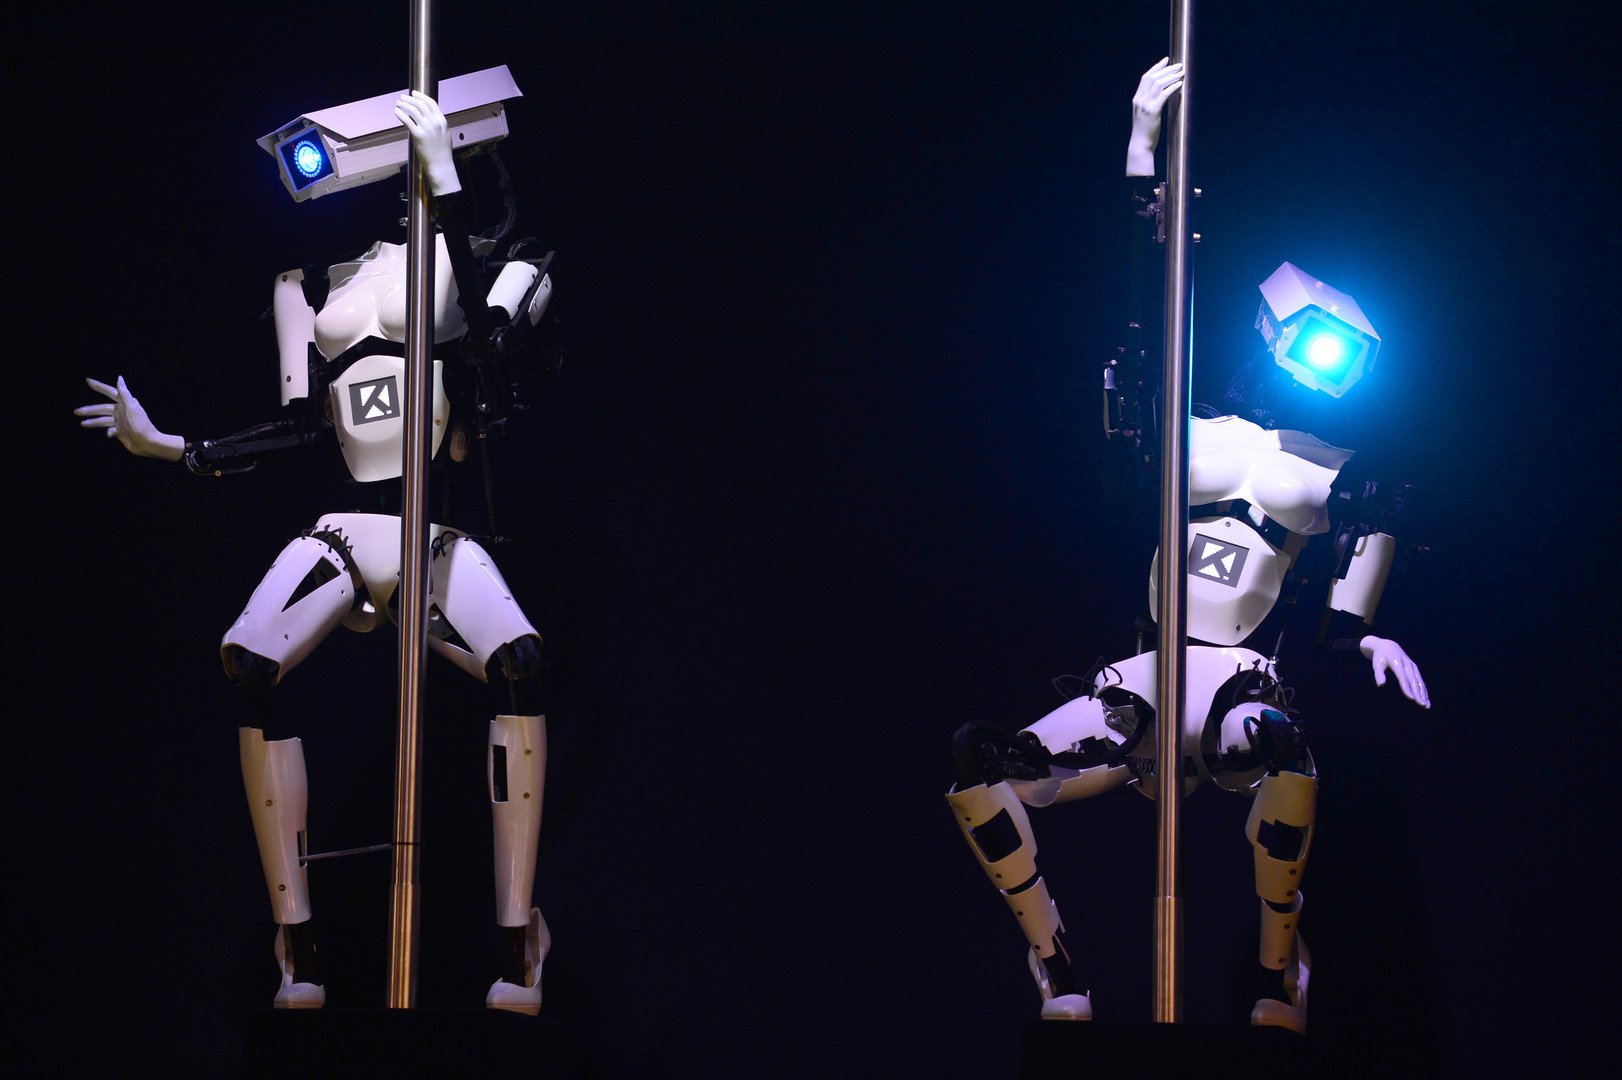 روبوتات راقصة من شركة توبيت سوفوير في معرض هانوفر للتكنولوجيا بألمانيا، 9 مارس/آذار 2014 